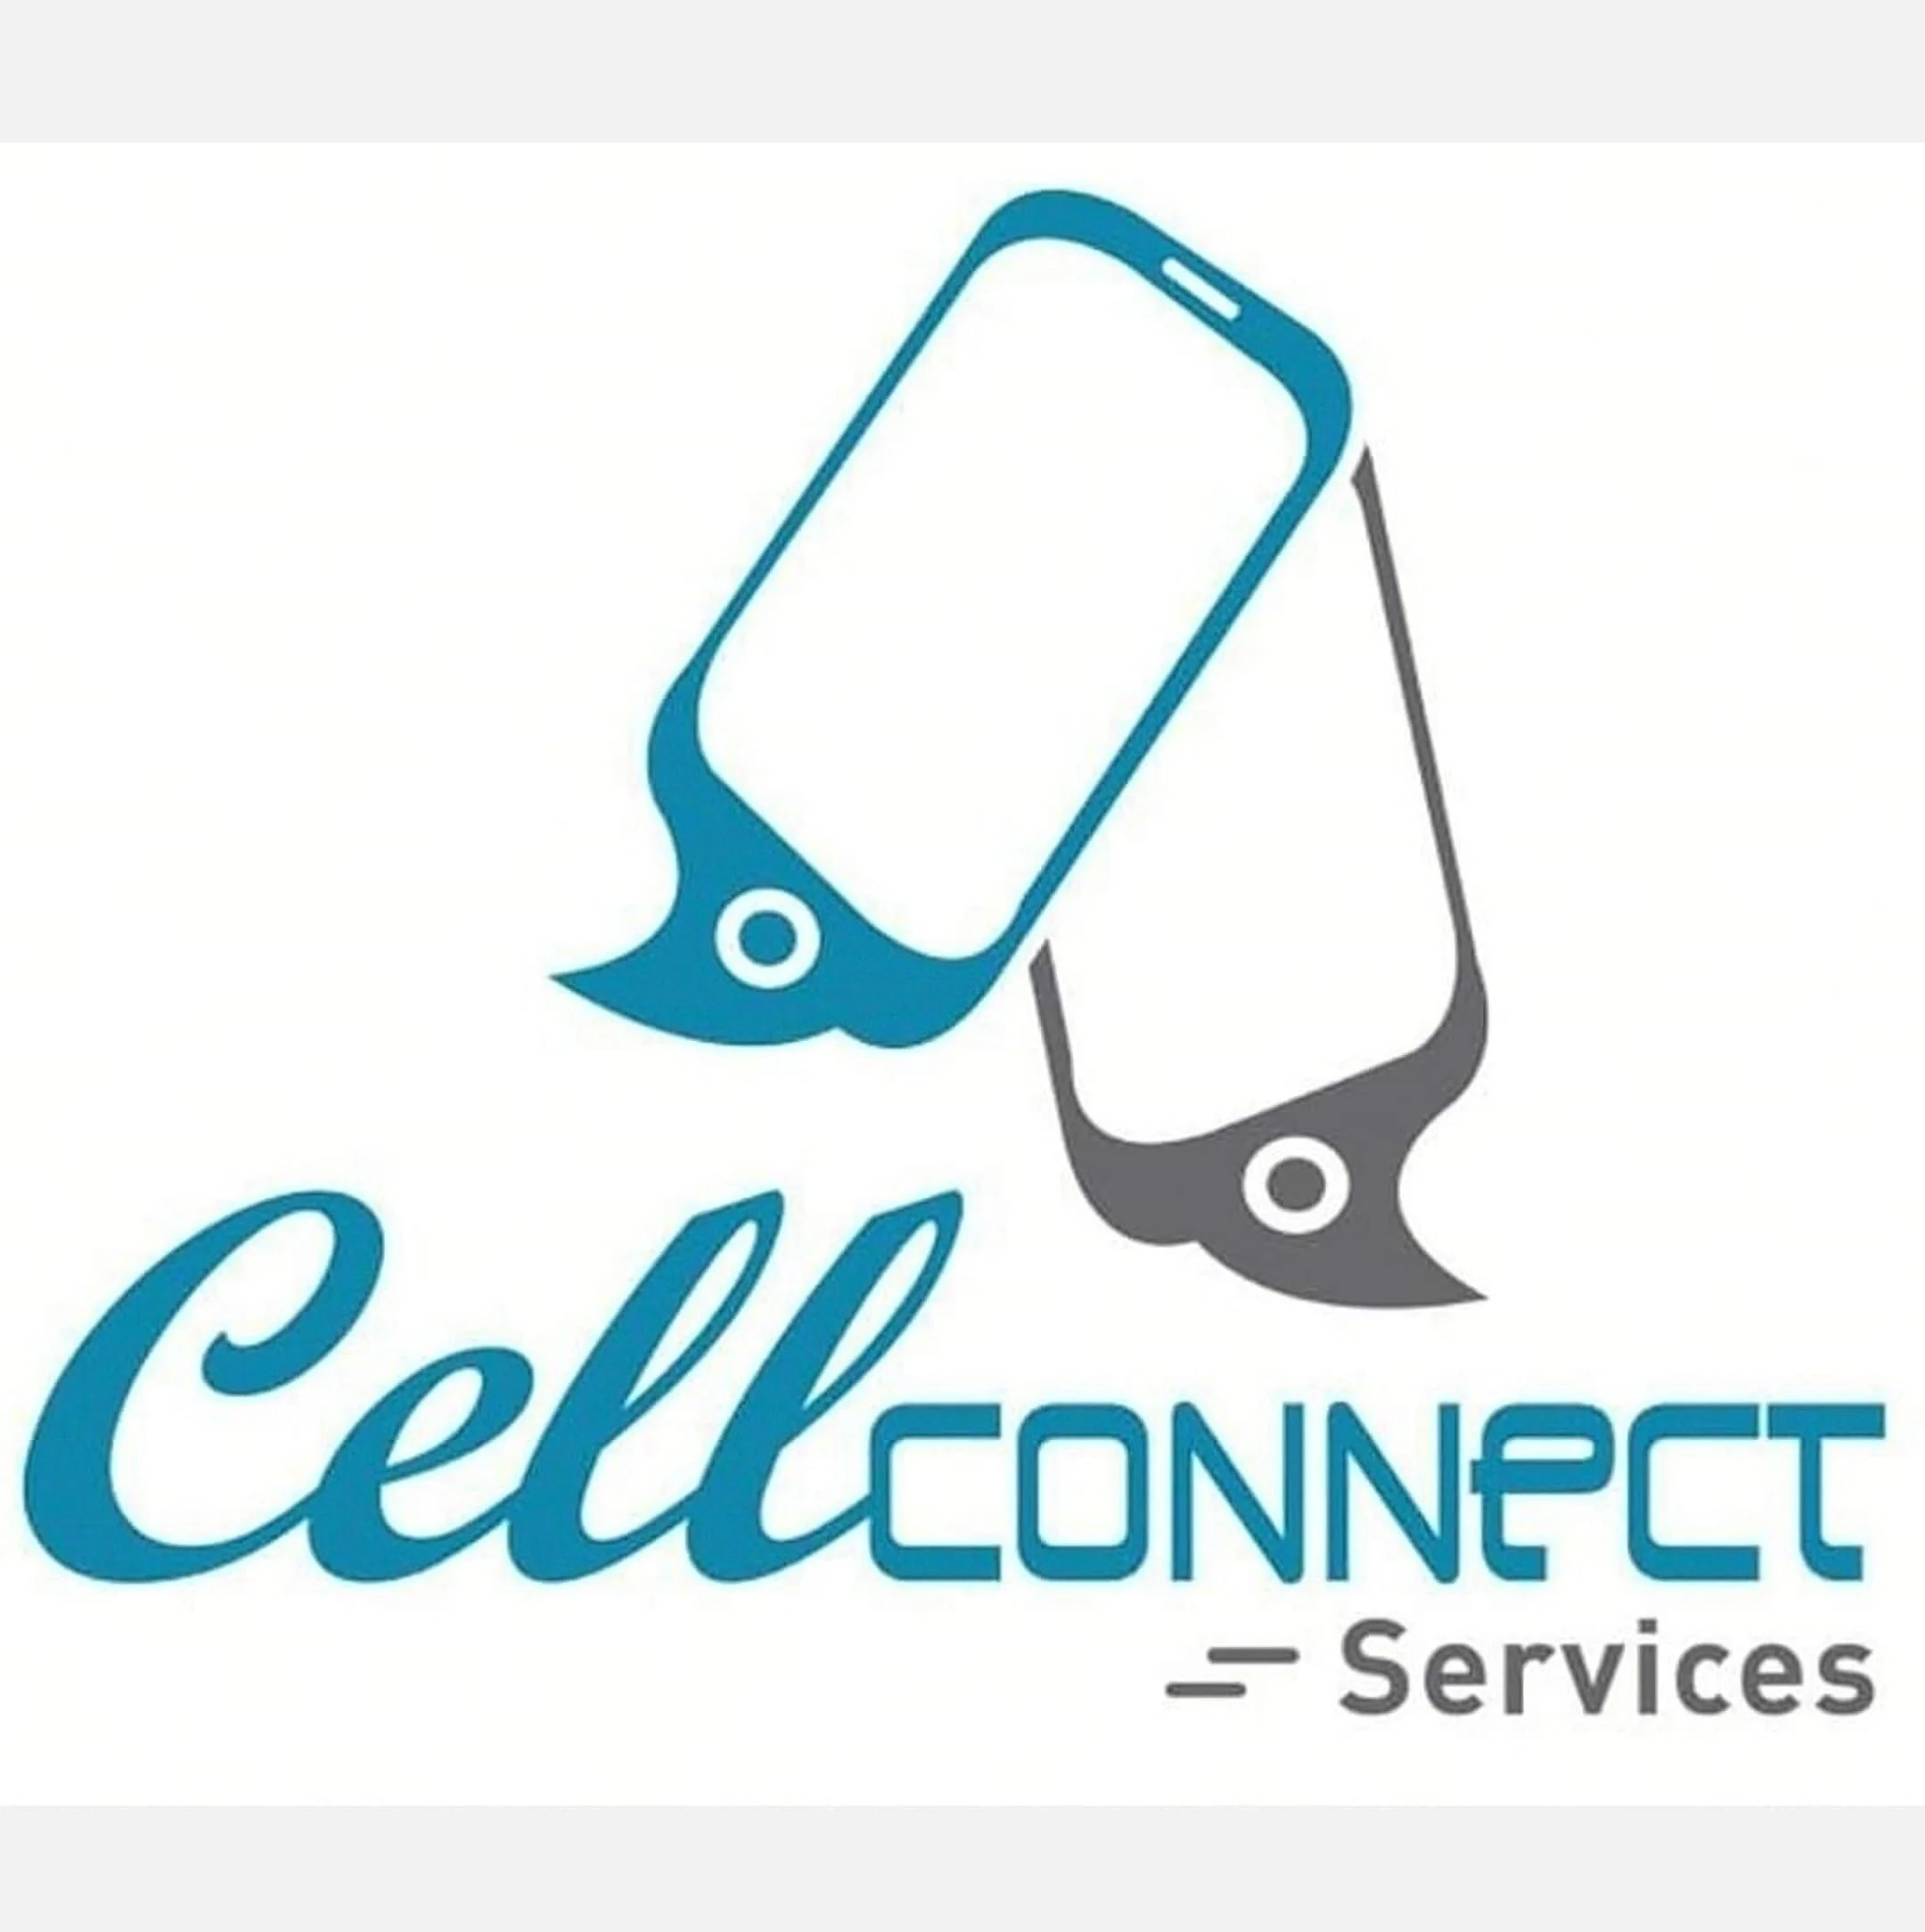 Reparación de Celulares-cellconnect-15138